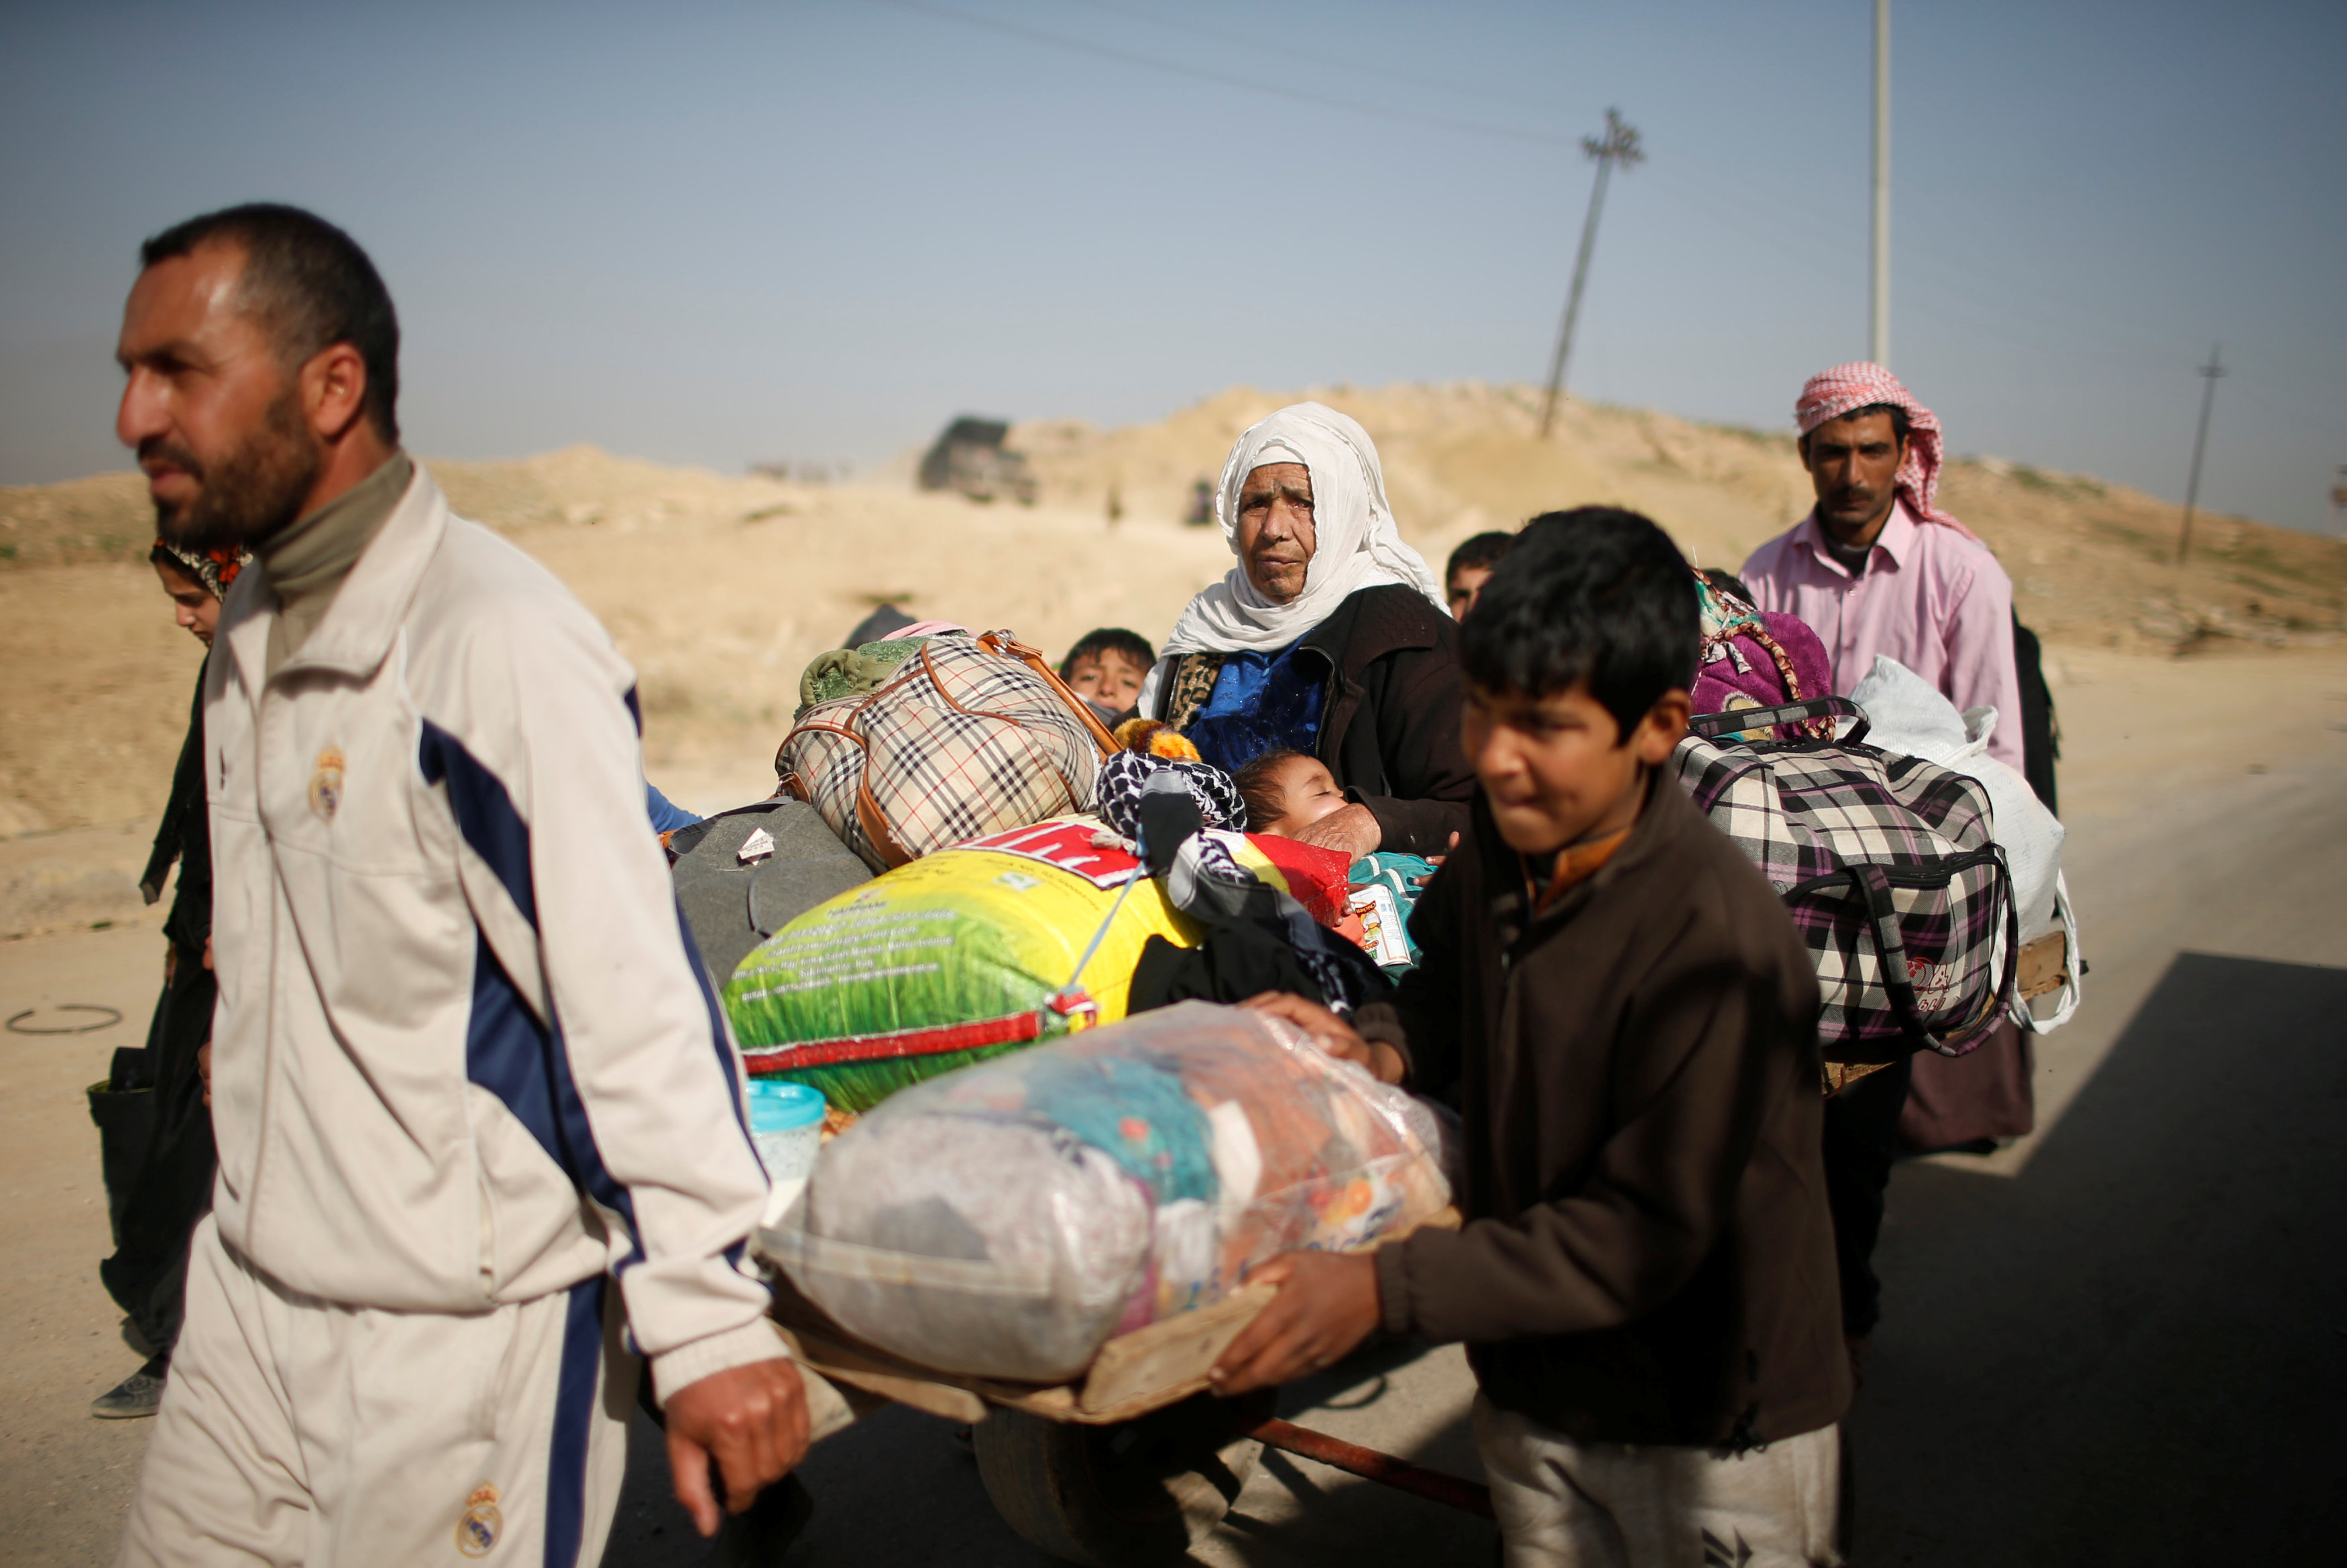 النازحين العراقيين يحملون امتعتهم للتوجه لمعسكرات الجيش